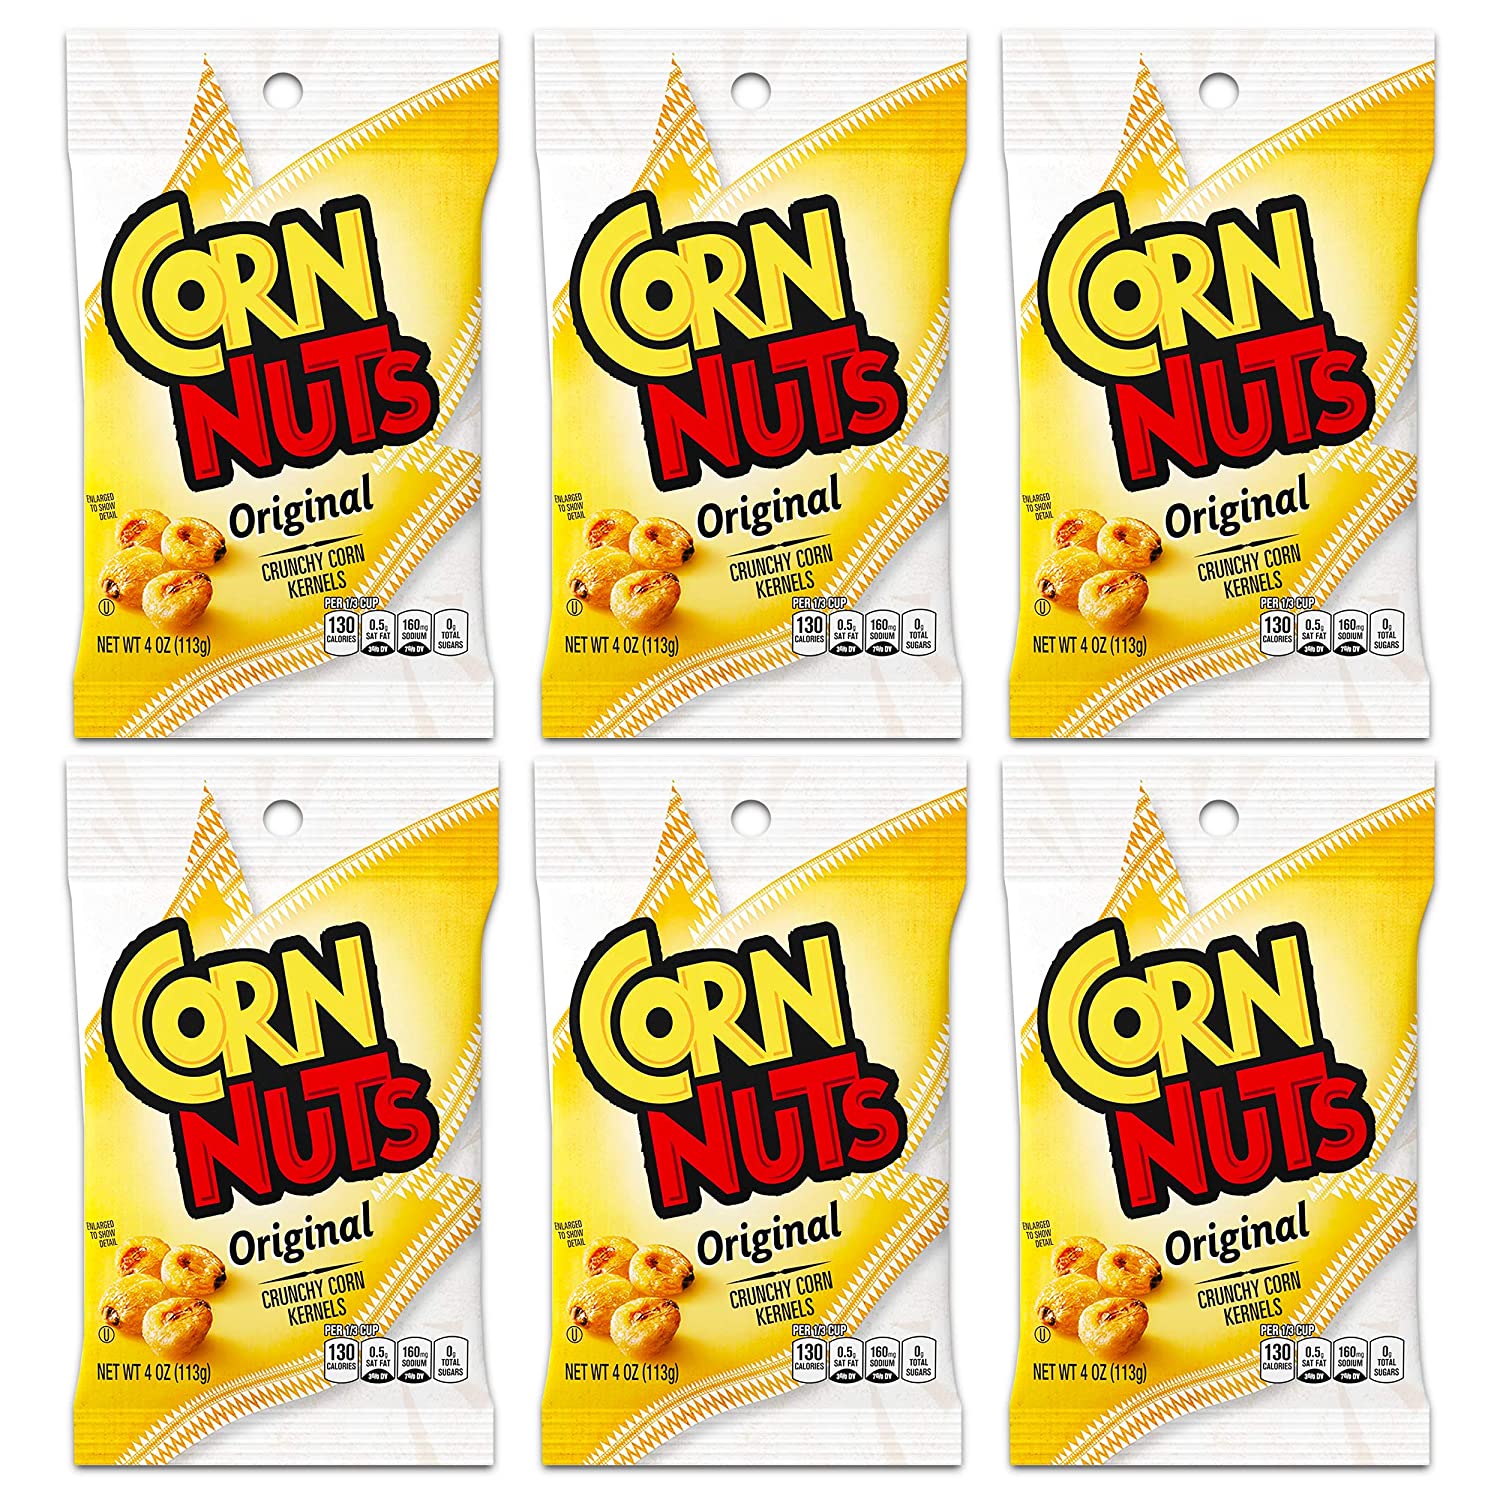 Corn Nuts Original Crunchy Corn Kernels 4 oz Bag